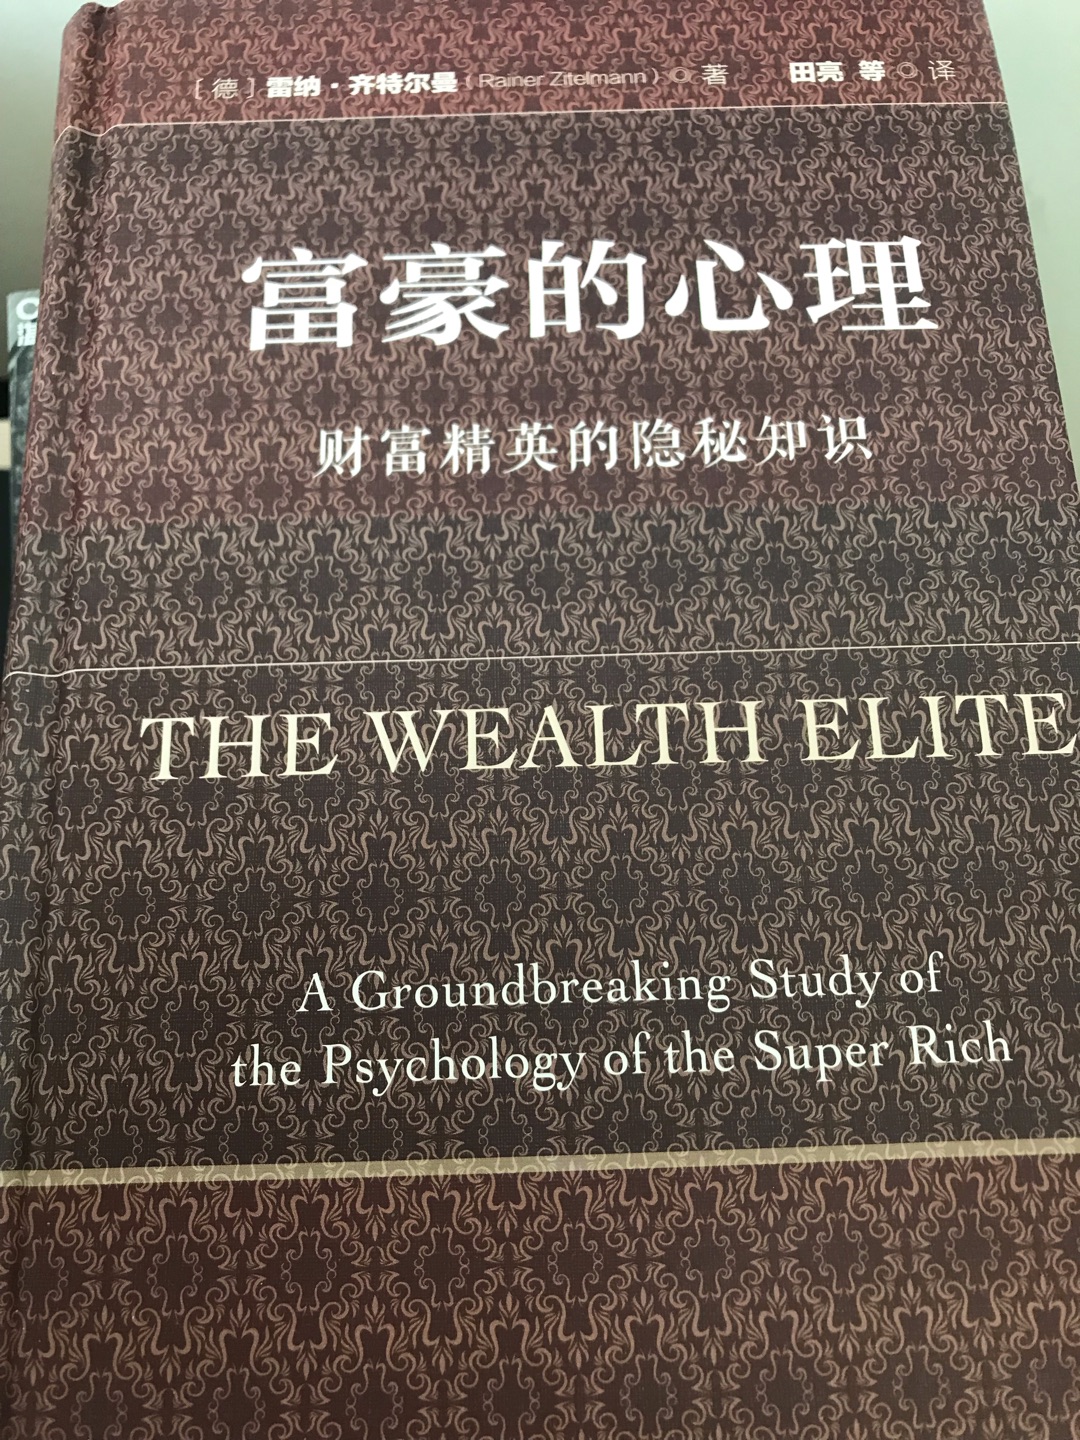 想知道富豪怎么想吗？应该读读这本书